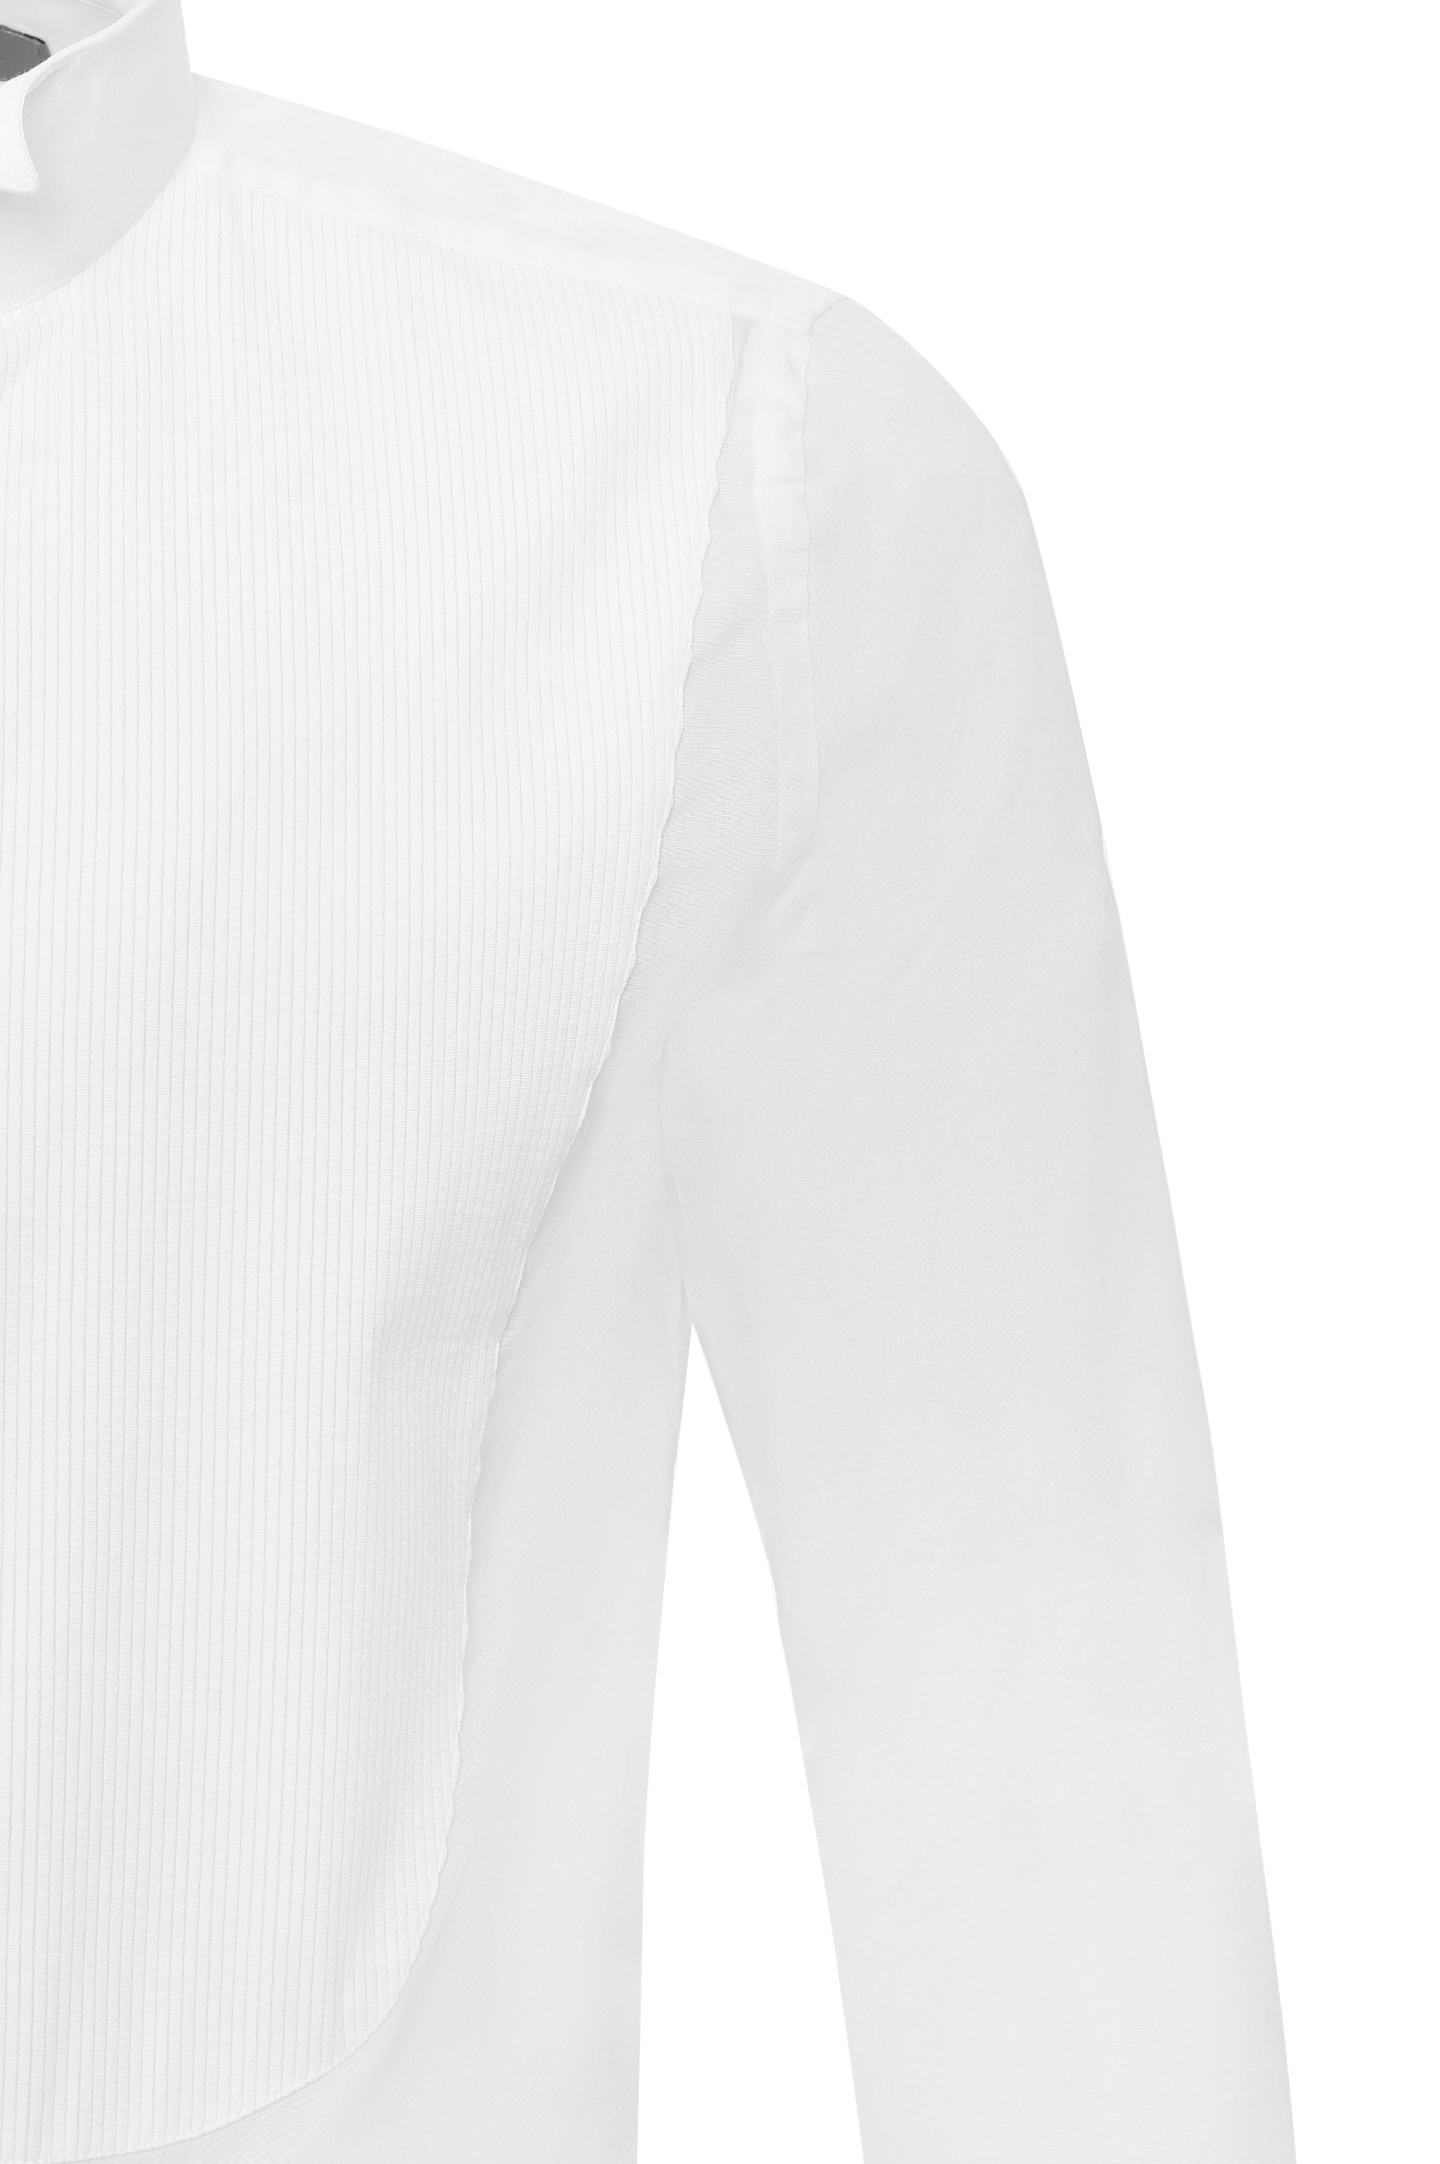 Рубашка CANALI GC00134/001, цвет: Белый, Мужской